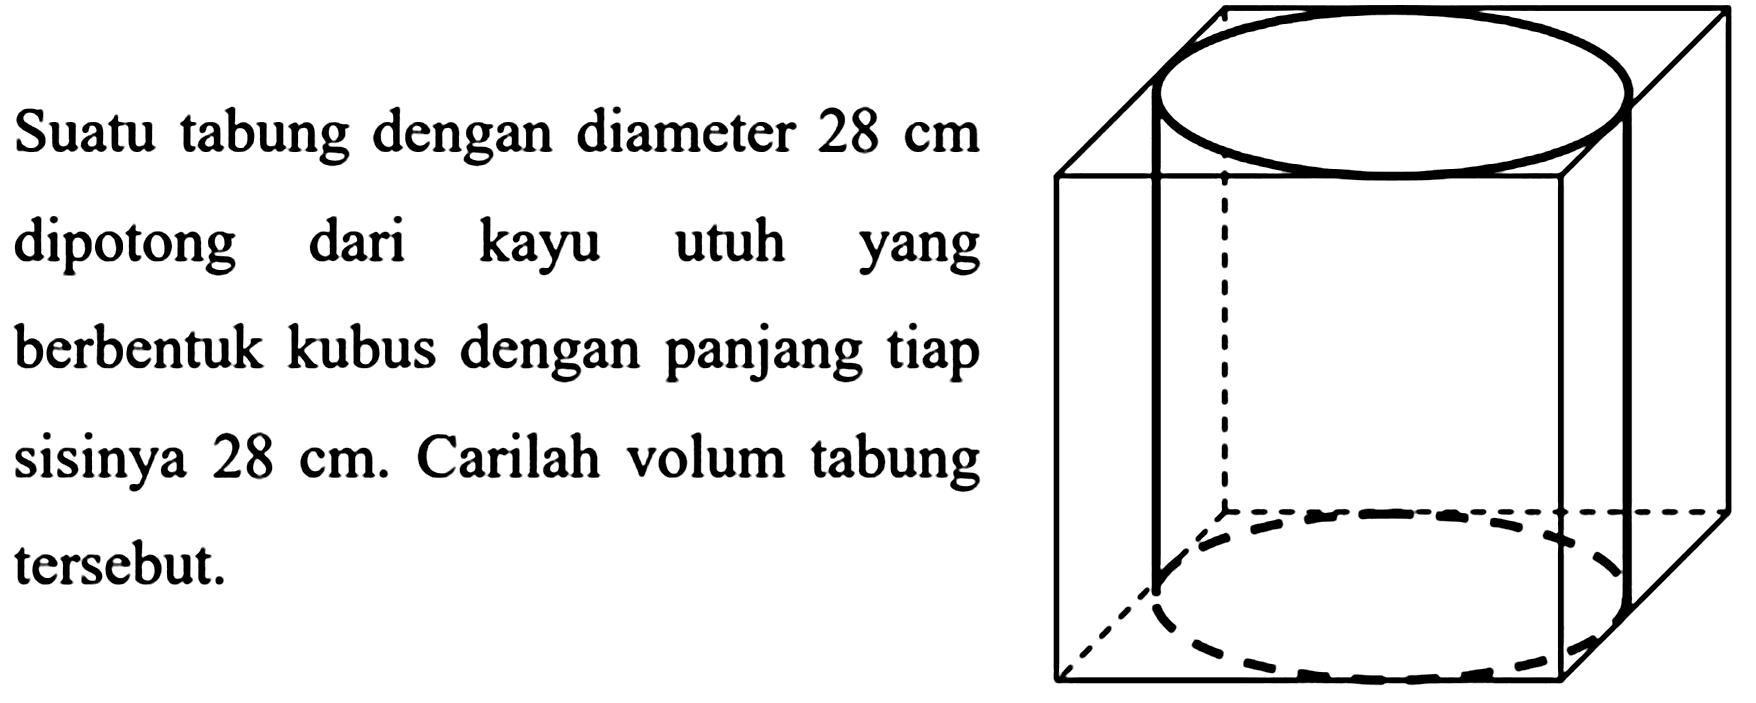 Suatu tabung dengan diameter  28 cm  dipotong dari kayu utuh yang berbentuk kubus dengan panjang tiap sisinya  28 cm .  Carilah volum tabung tersebut.